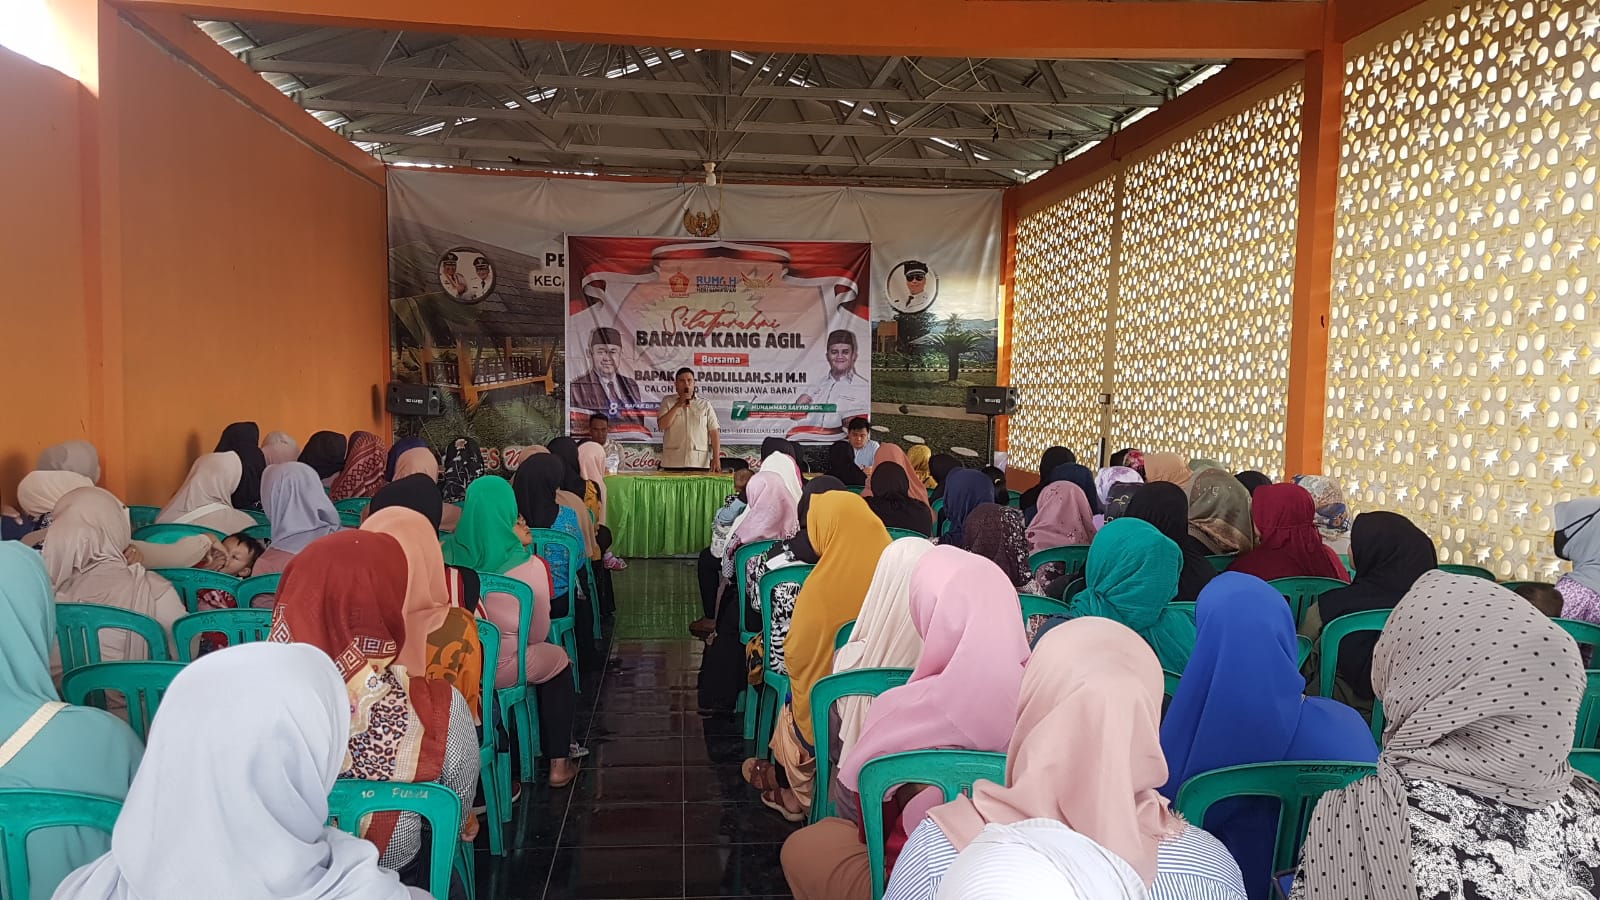 ARAHAN : Calon DPRD Dapil 4 Kabupaten Sukabumi, Muhammad Sayyid Agil, saat memberikan sambutan di hadapan ratusan warga di Bale Sawala Desa/Kecamatan Kebonpedes pada Sabtu (10/02).